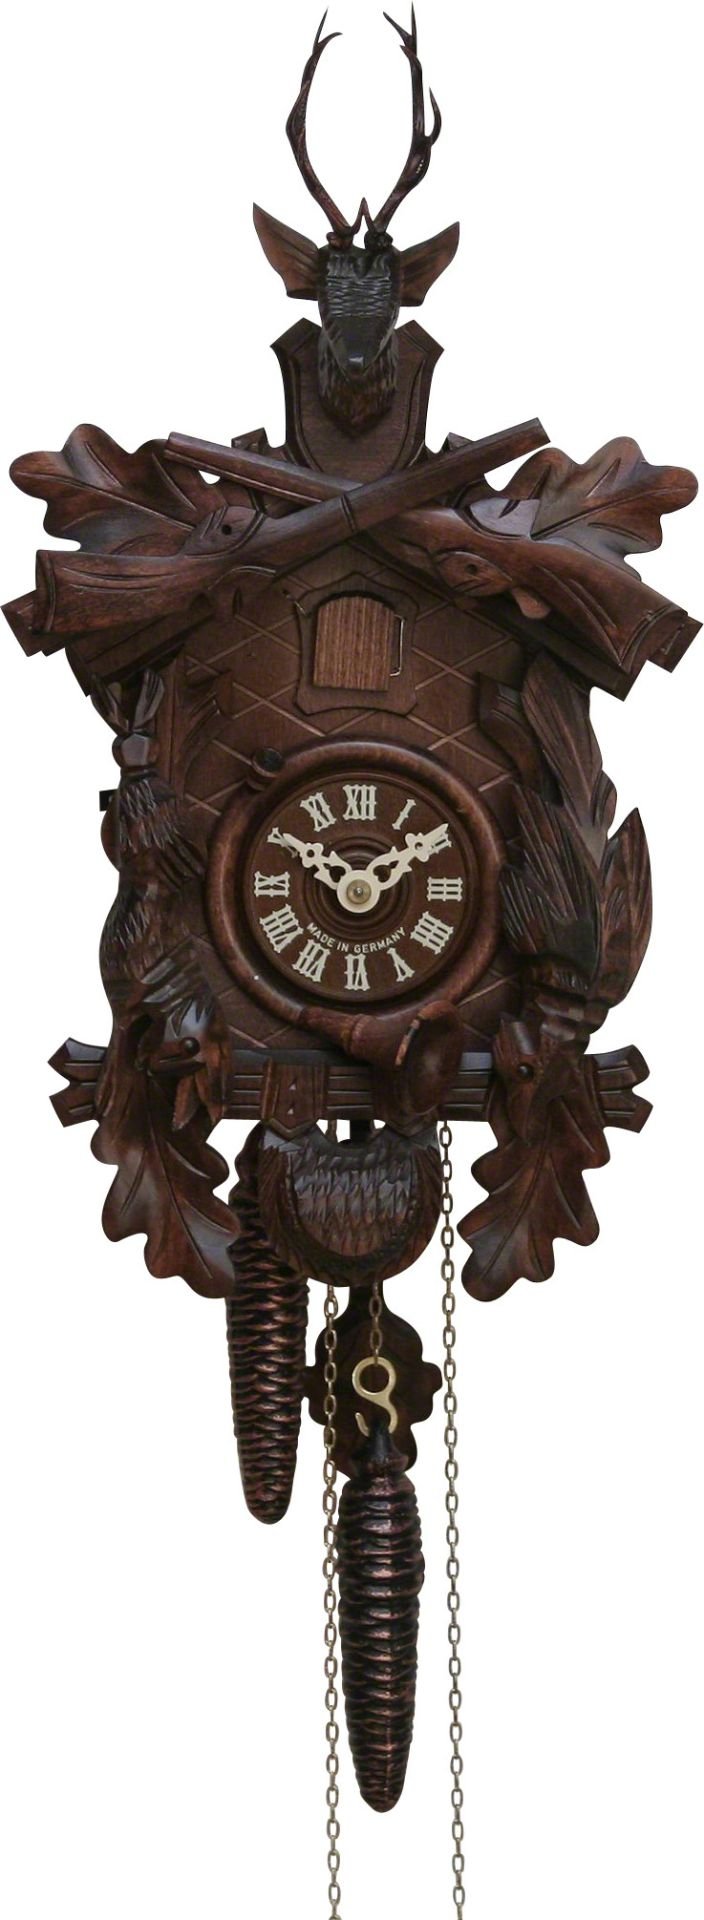 Orologio cucu tradizionale meccanismo settimanale 58cm di Hekas